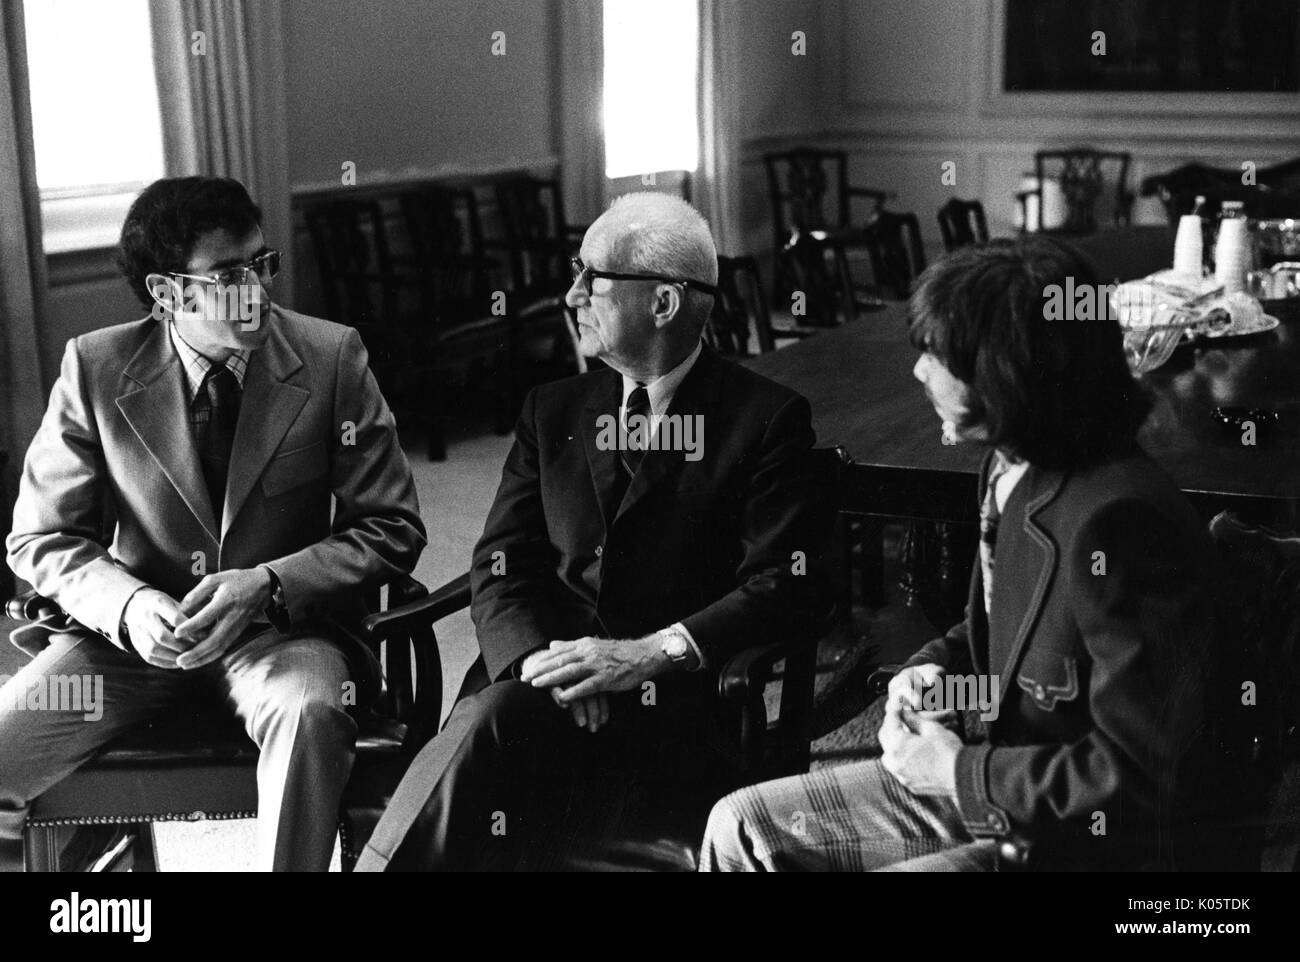 Portrait de trois-quarts de l'architecte Buckminster Fuller, assis dans une chaise en bois entre deux autres hommes, Fuller portant des lunettes et un costume sombre et une chemise blanche avec une cravate rayée, en face de l'homme à sa droite, avec ses mains jointes sur ses genoux, avec un sérieux de l'expression du visage. 1970. Banque D'Images